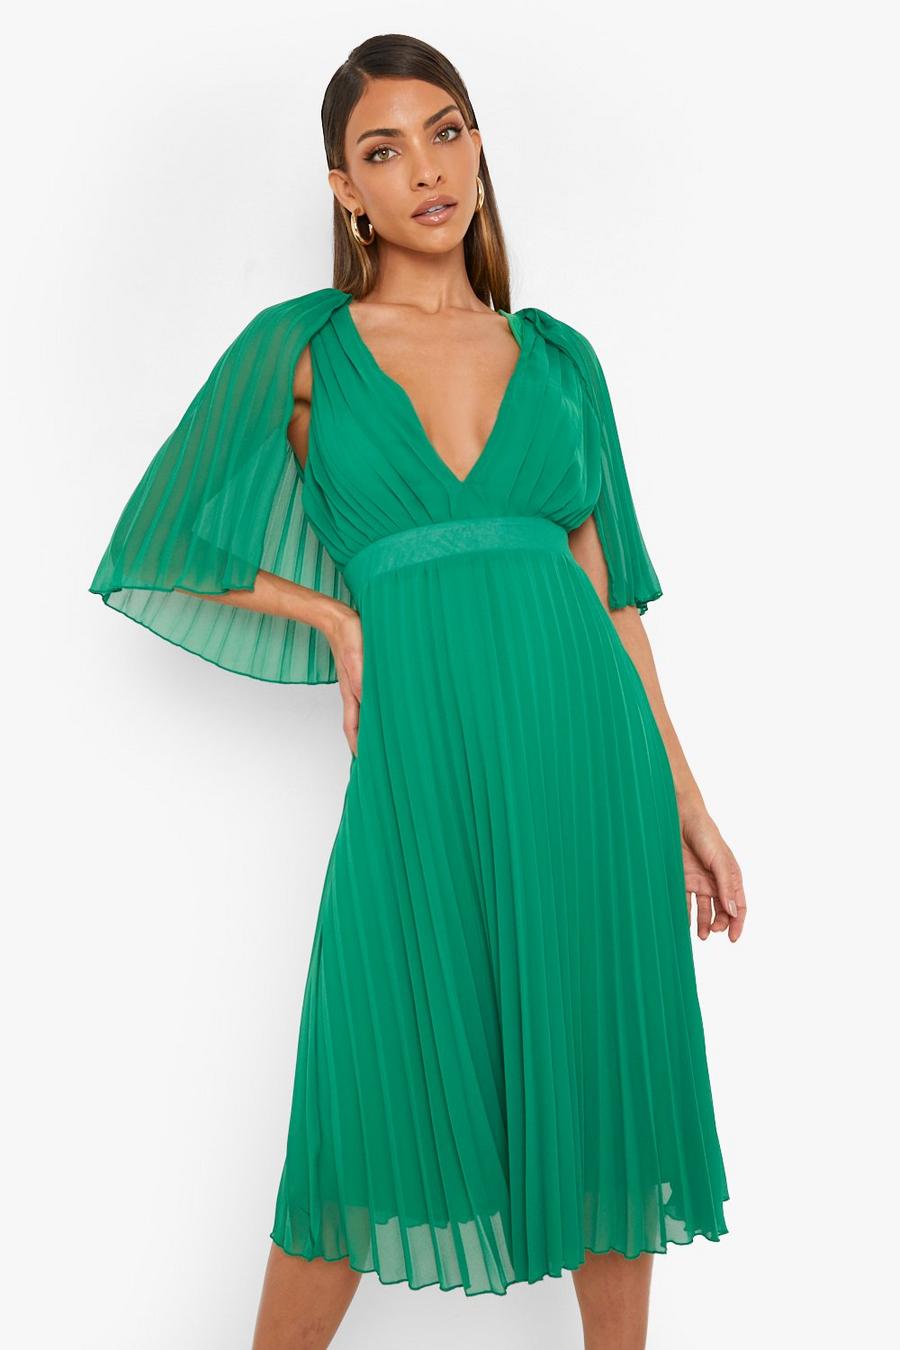 ירוק שמלת שושבינה באורך מידי עם קפלים ושכמייה